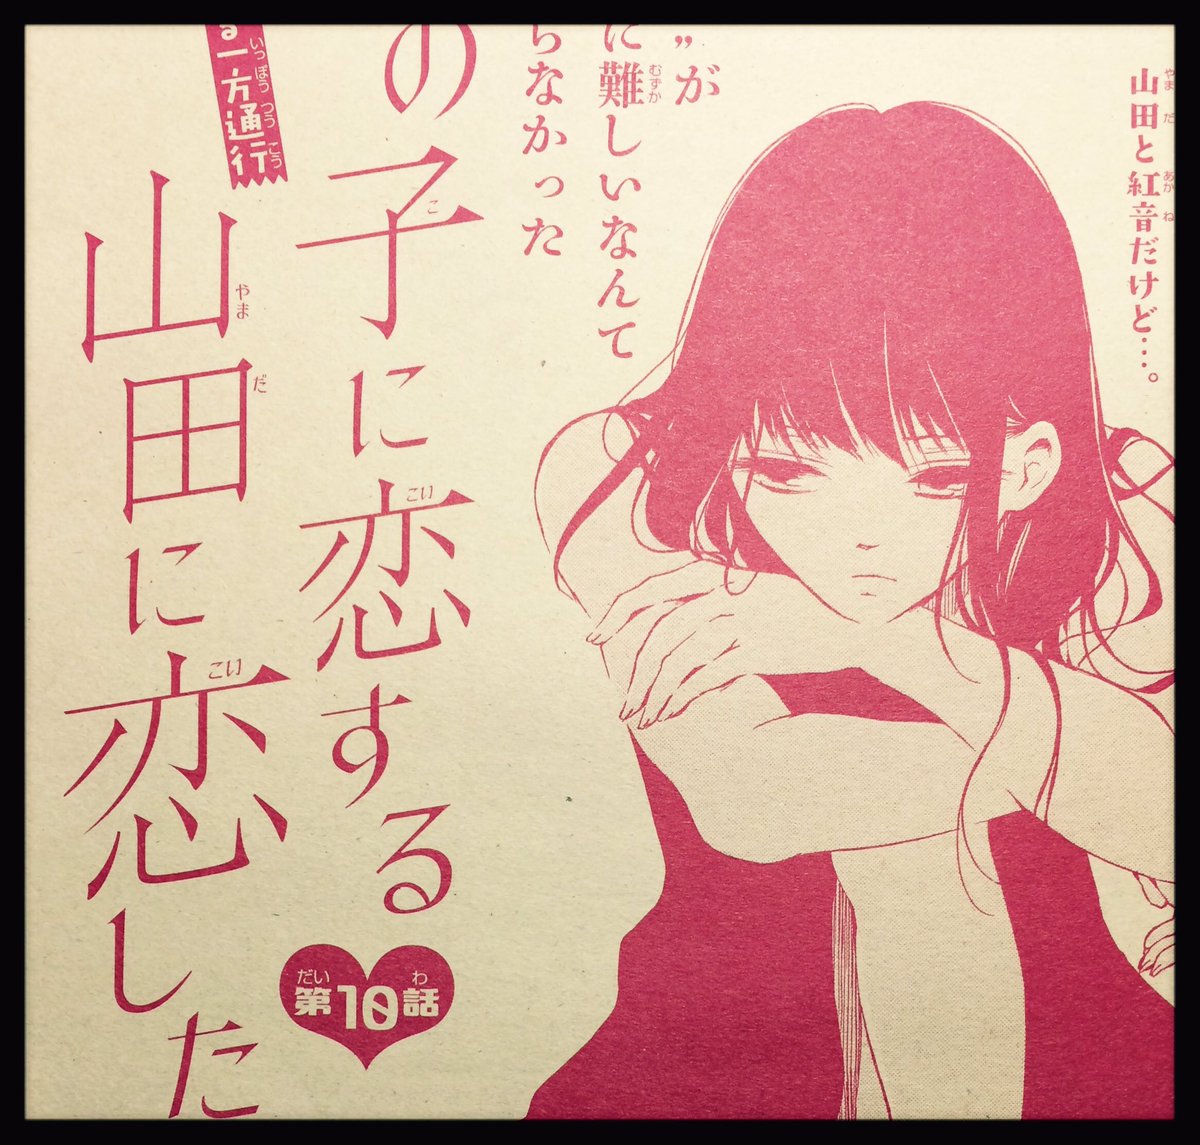 ✩お知らせ✩
本日3月18日発売のマーガレット8号にて、「あの子に恋する 山田に恋した」第10話が掲載されております!

よろしくお願いいたします!! 